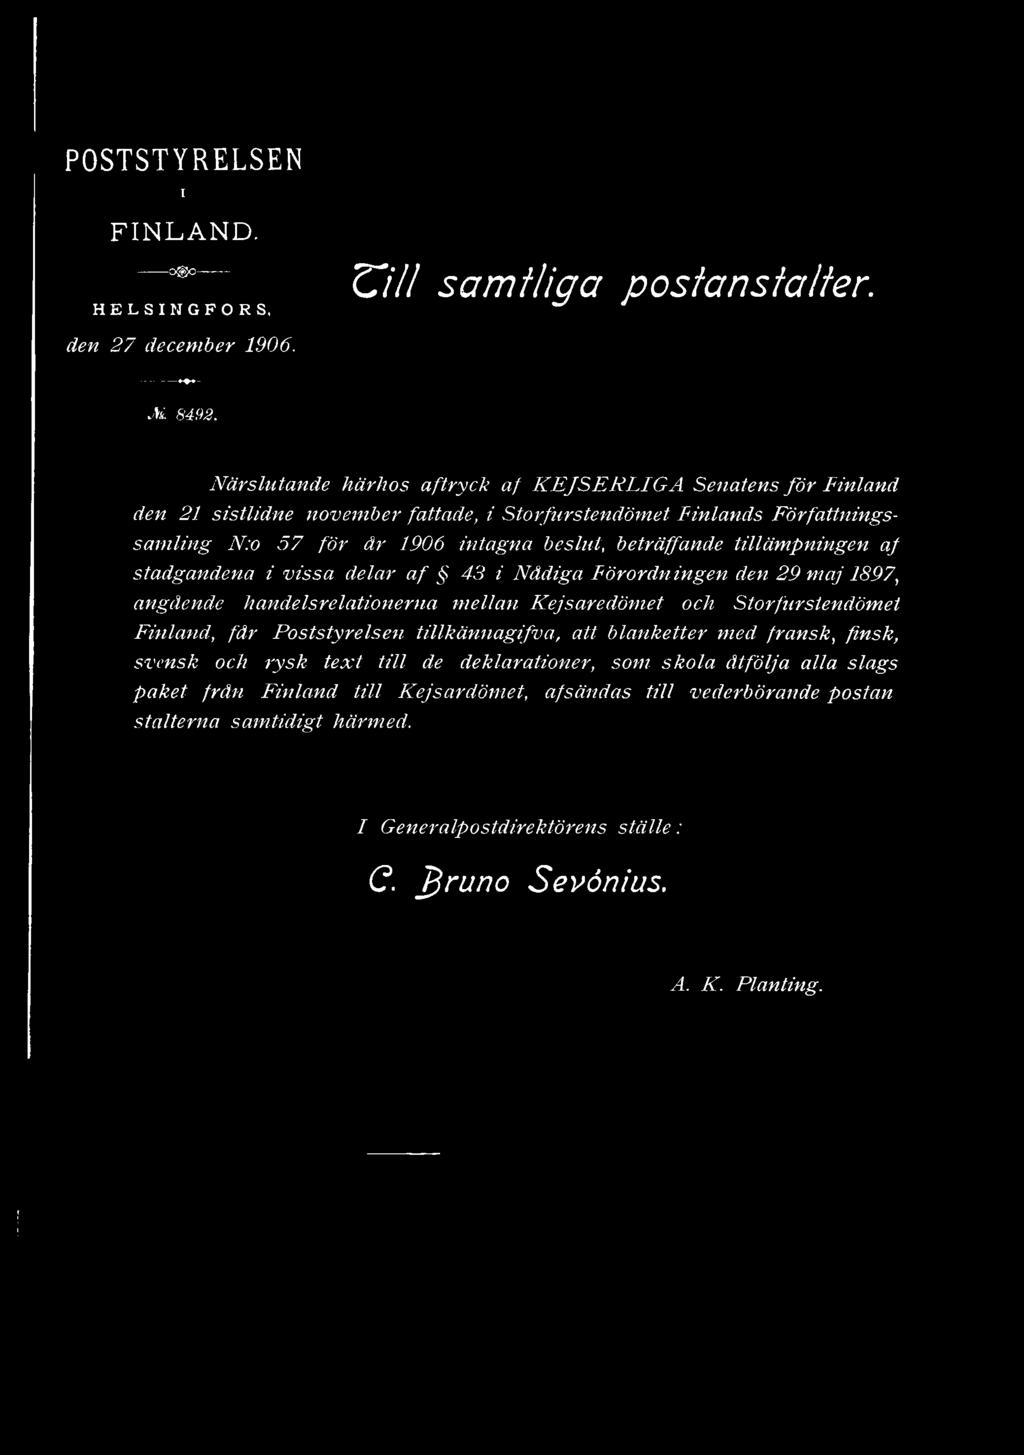 ingen den 29 maj 1897, angående handelsrelationerna mellan Kejsaredömet och Storfurstendömet Finland, får Poststyrelsen tillkännagifva,